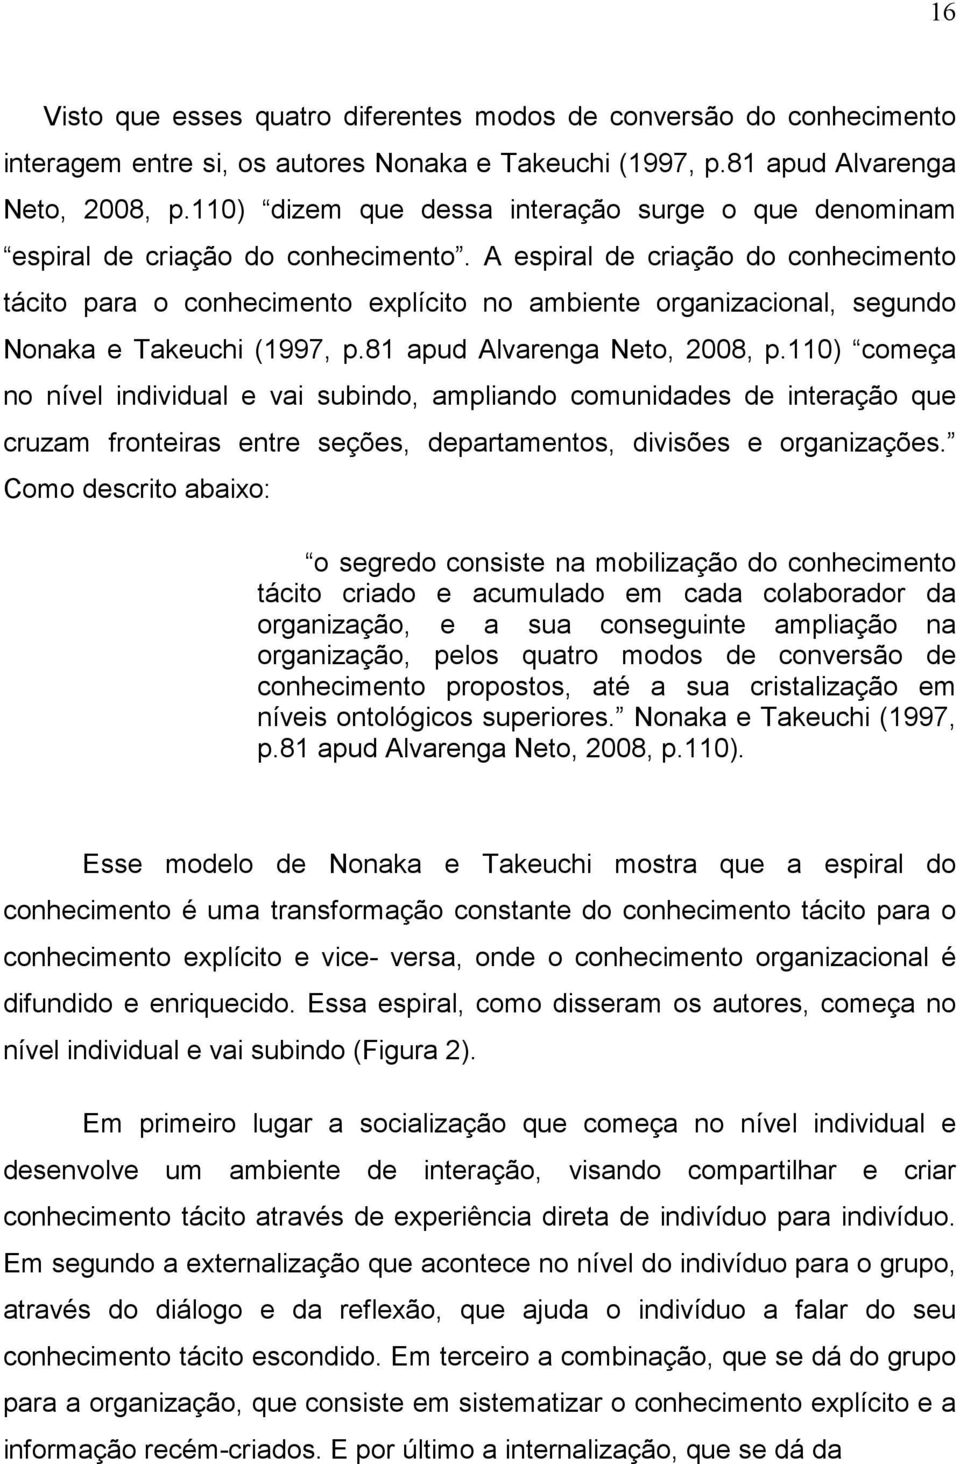 A espiral de criação do conhecimento tácito para o conhecimento explícito no ambiente organizacional, segundo Nonaka e Takeuchi (1997, p.81 apud Alvarenga Neto, 2008, p.